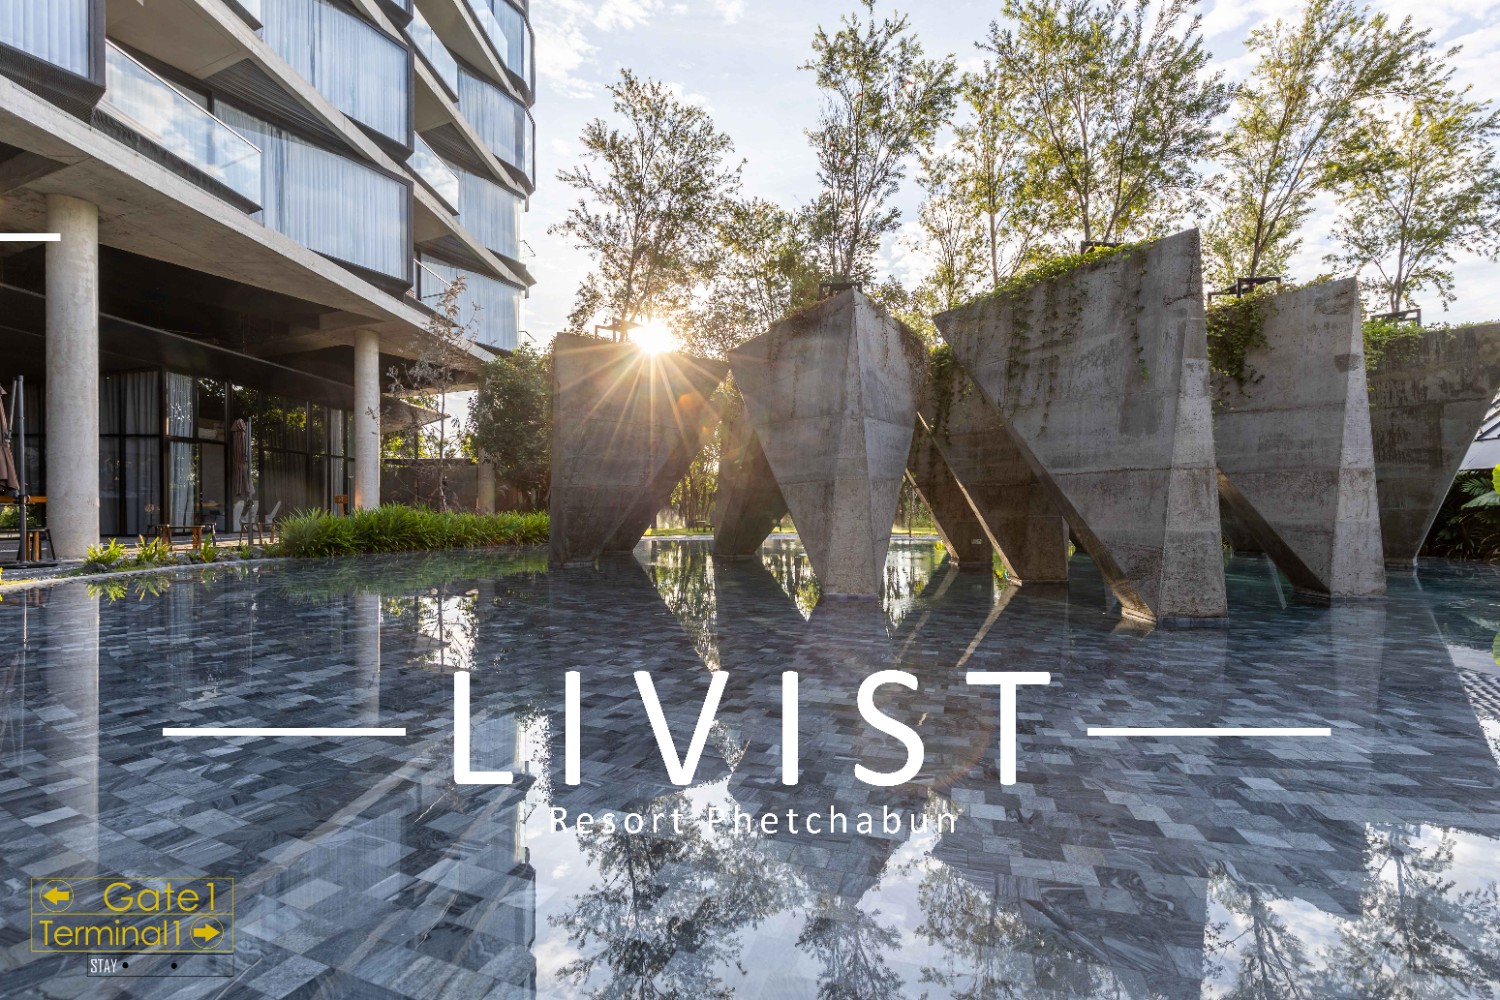 รีวิว...LIVIST Resort เพชรบูรณ์ กับอีก 1 ร้านไก่ย่างวิเชียรบุรี  แถมคาเฟ่ให้อีกที่ - Pantip